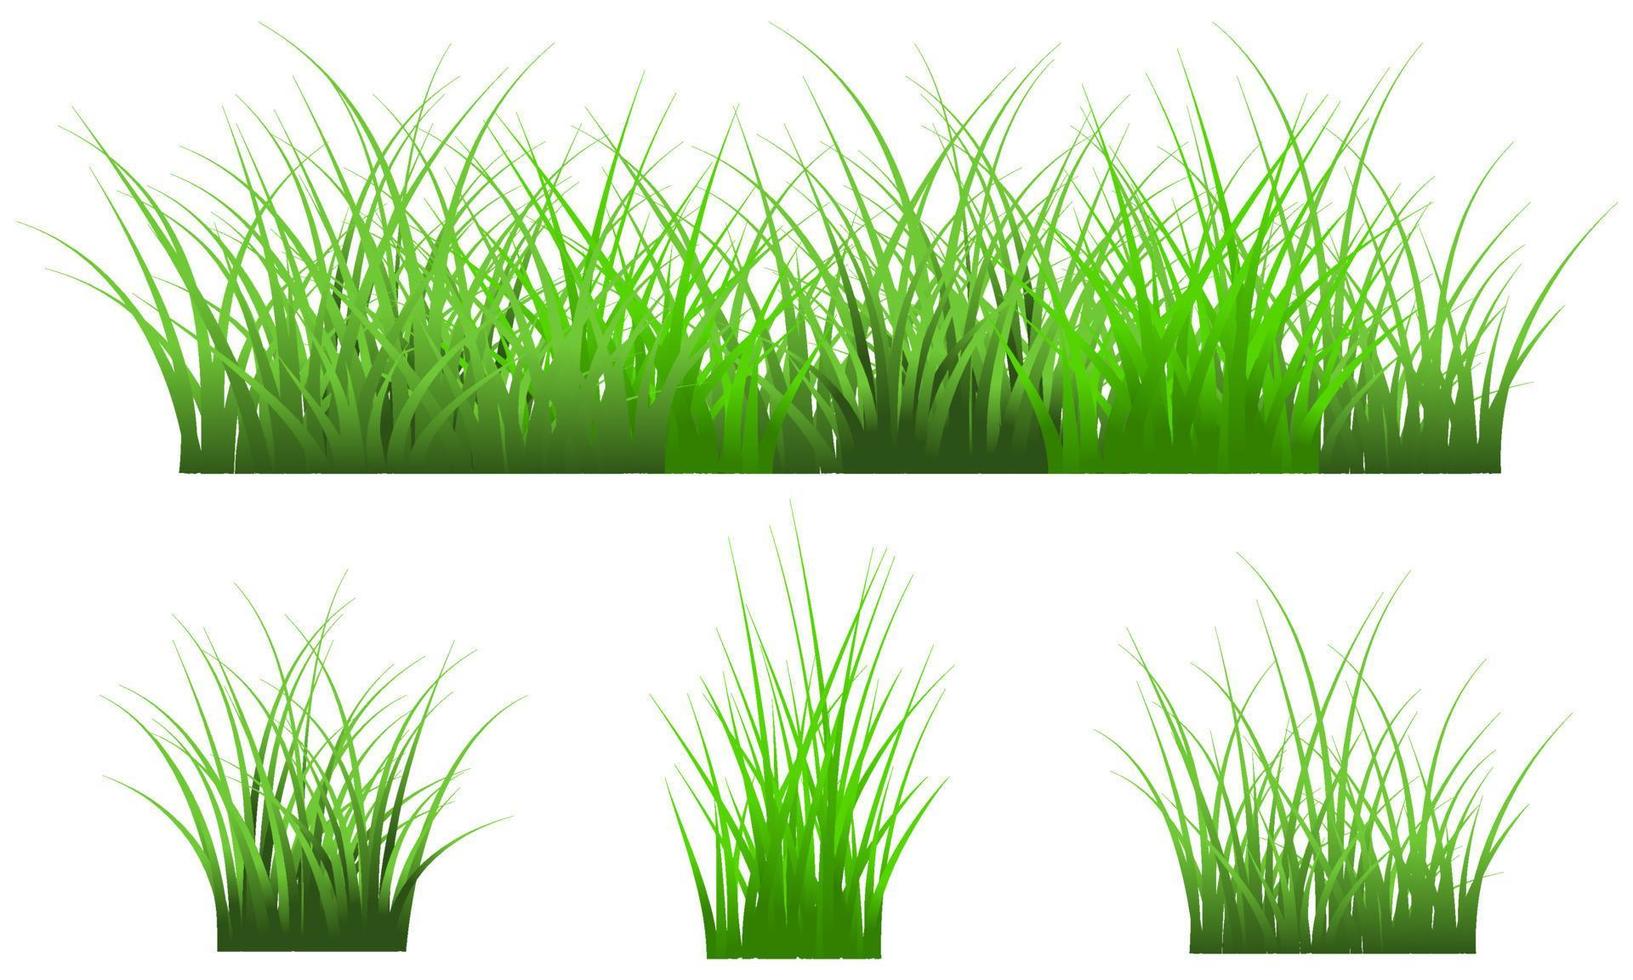 grönt gräs isolerat på vit bakgrund, gratis vektor gräs set